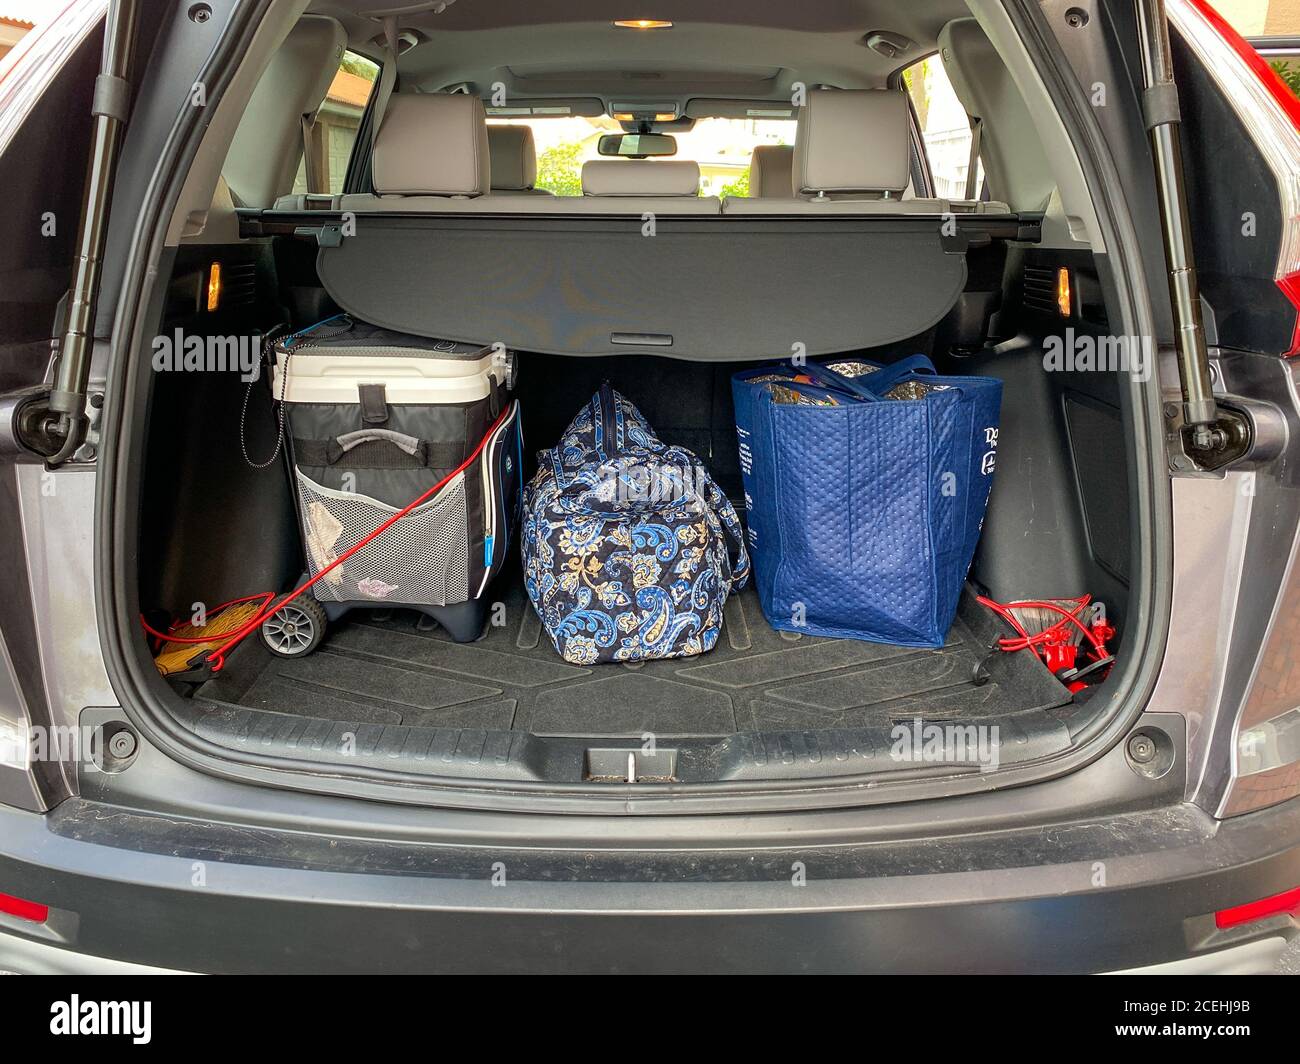 Coffre de voiture rempli d'une valise et d'une glacière prêts pour un  voyage en voiture. Concept voyageant en voiture Photo Stock - Alamy